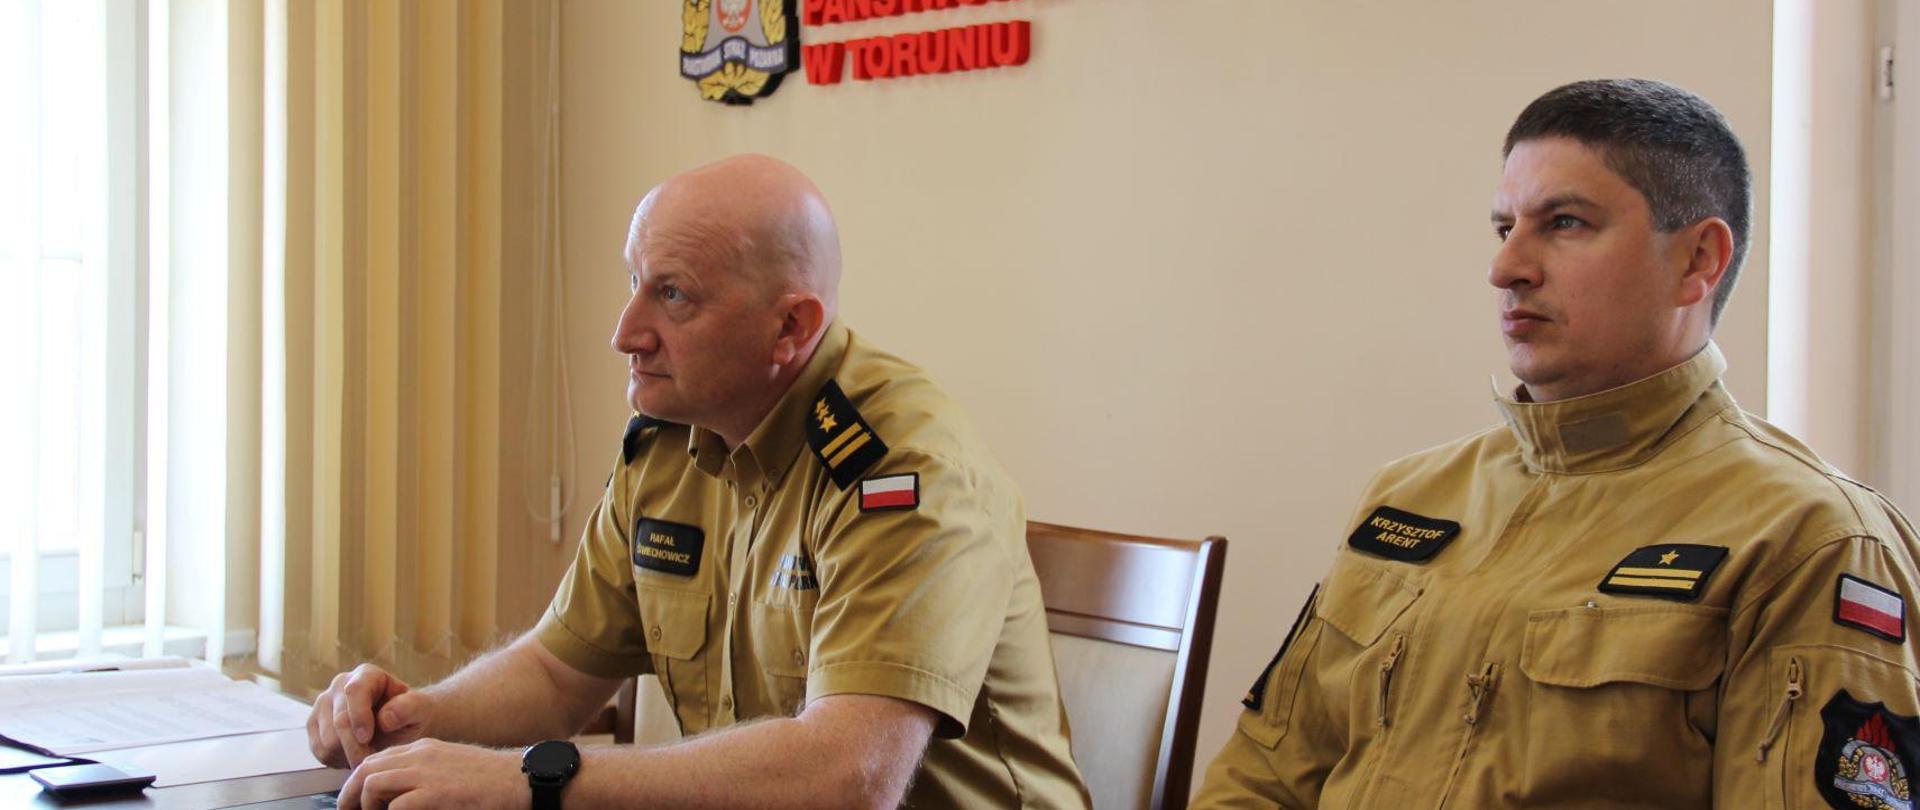 Przy stole konferencyjnym siedzi dwóch oficerów PSP w mundurach służbowych - eden notuje. Za nimi na ścinie napis z nazwą instytucji i logo.